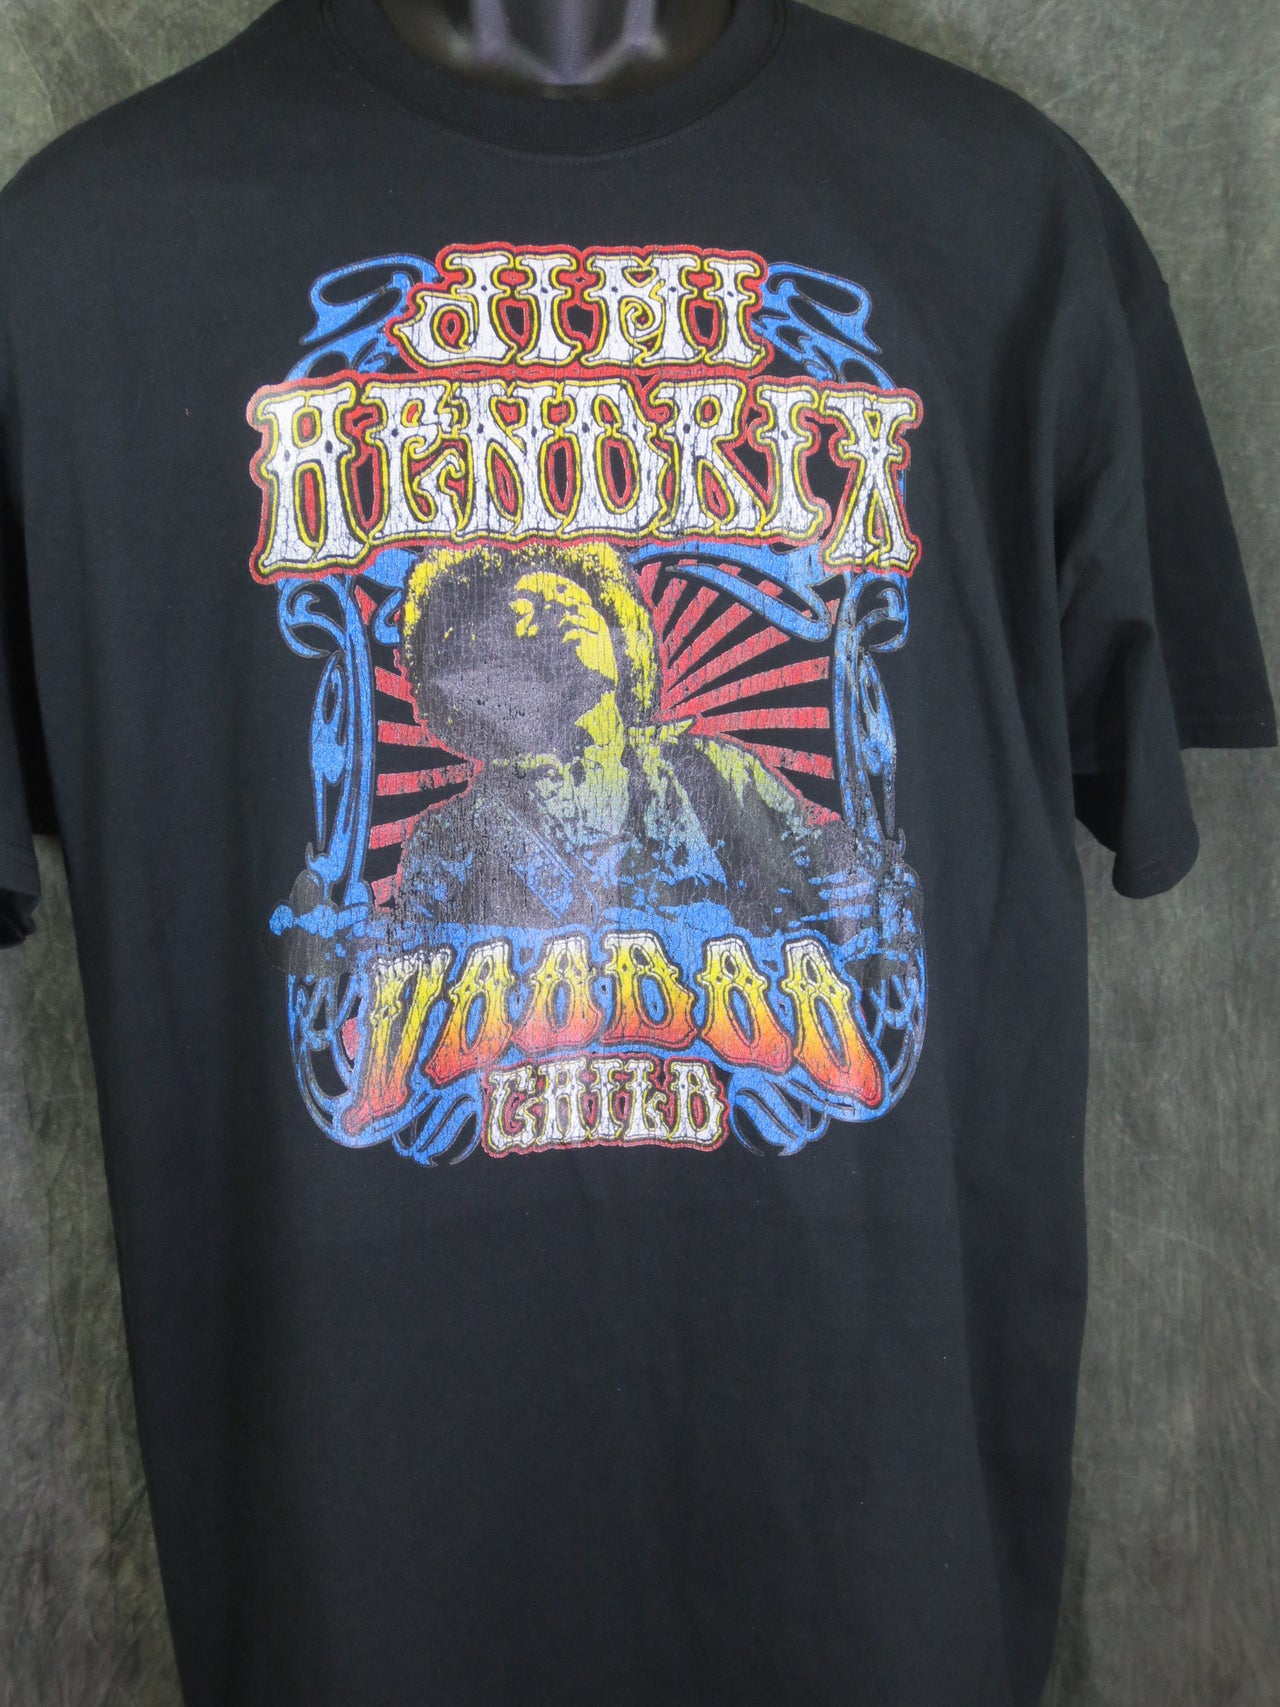 Jimi Hendrix Voodoo child tshirt - TshirtNow.net - 2